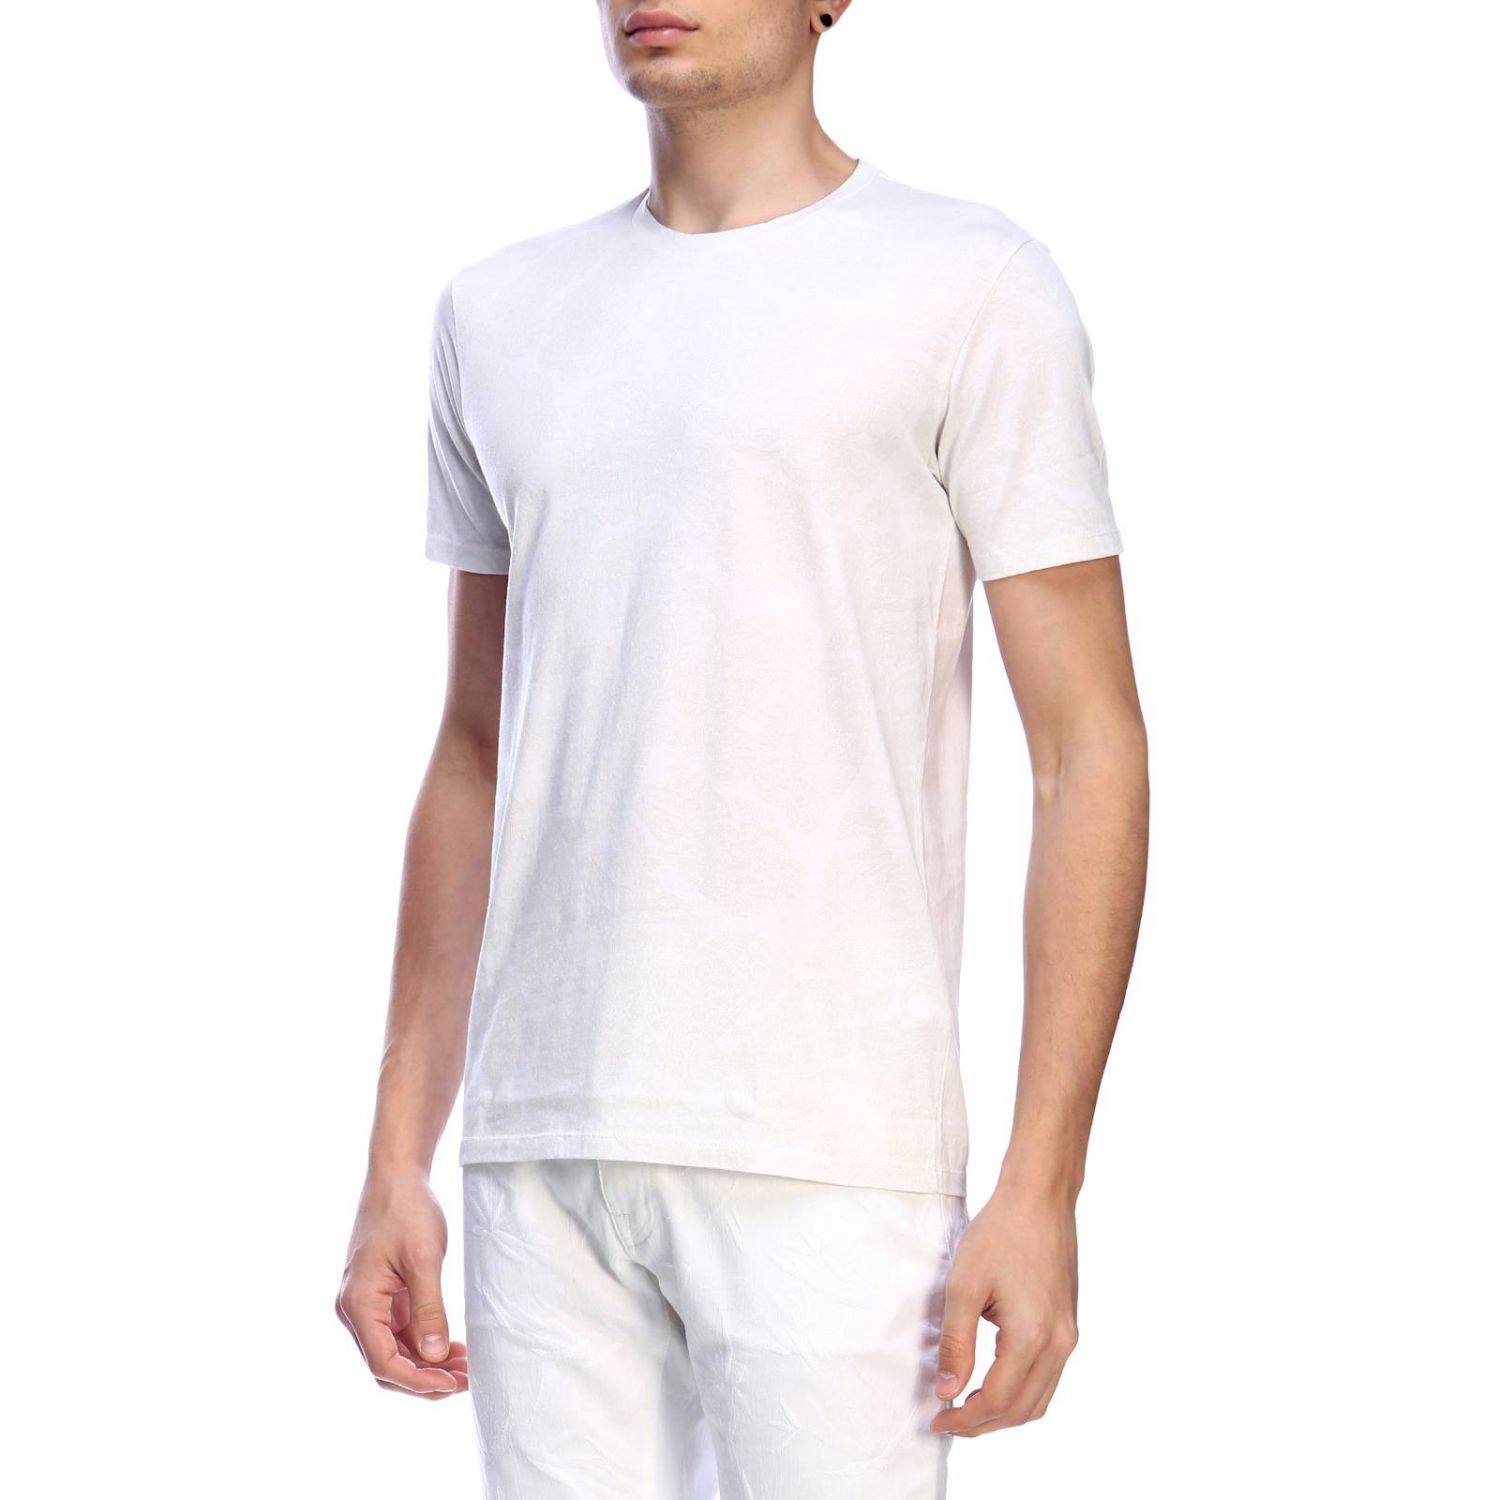 T-shirt Etro: T-shirt Etro homme blanc 2